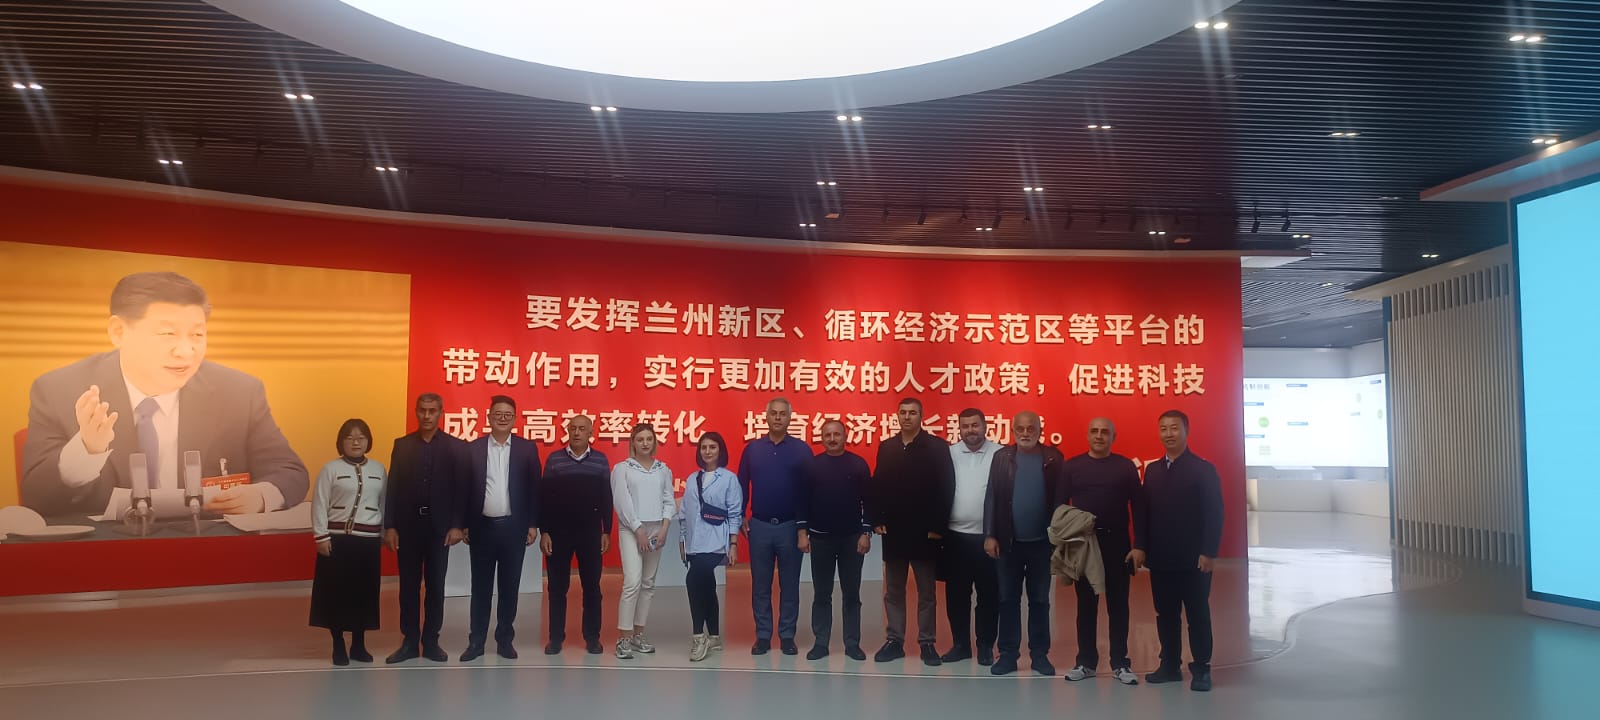 Представители СМИ посещают город Ланчьжоу